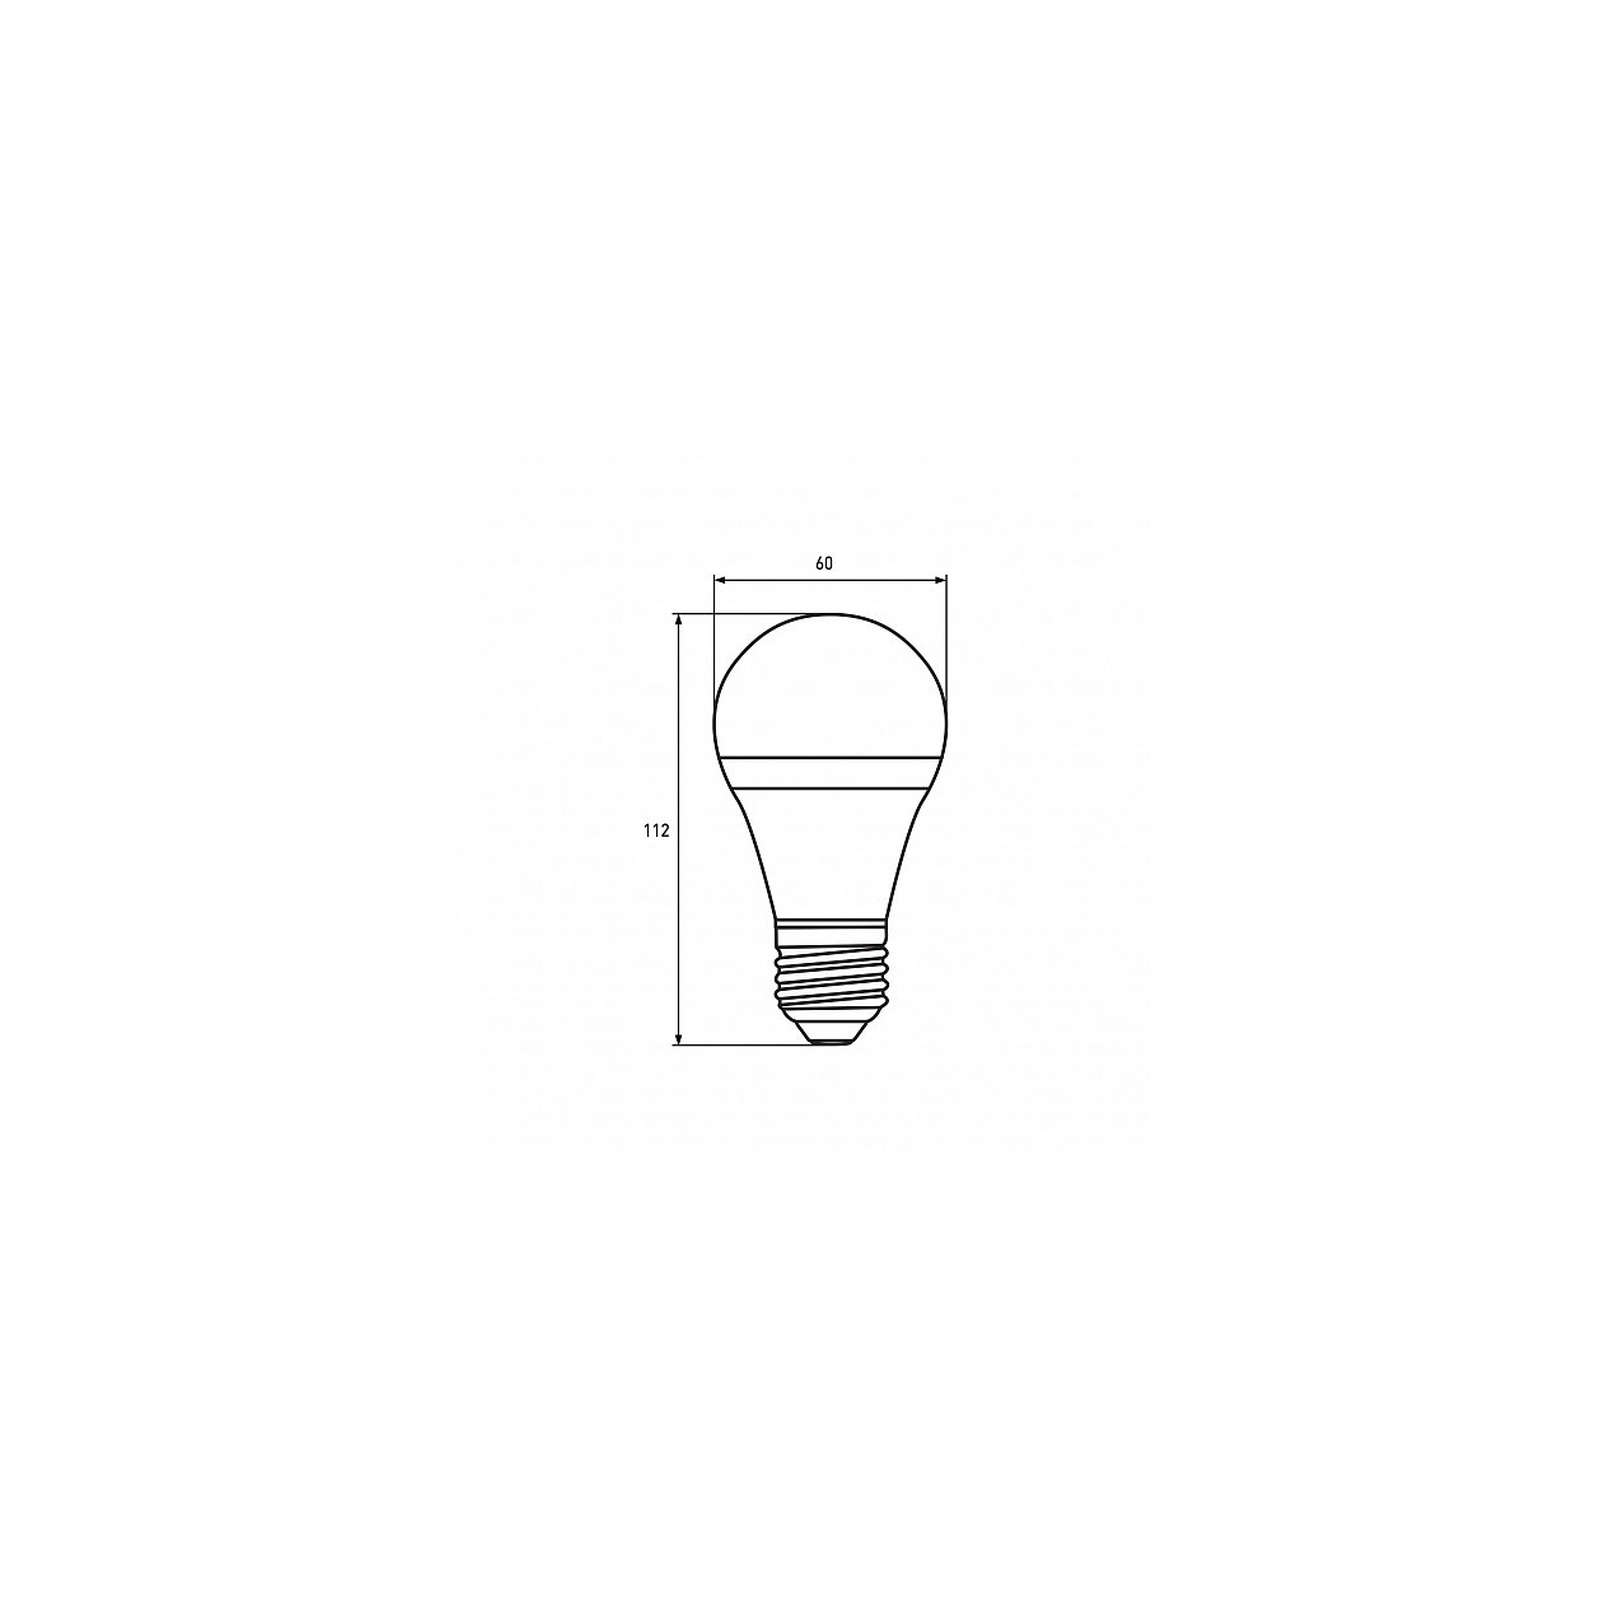 Лампочка Eurolamp A60 8W E27 2700K (deco) акция 1+1 new (MLP-LED-A60-08273(Amber)new) зображення 3